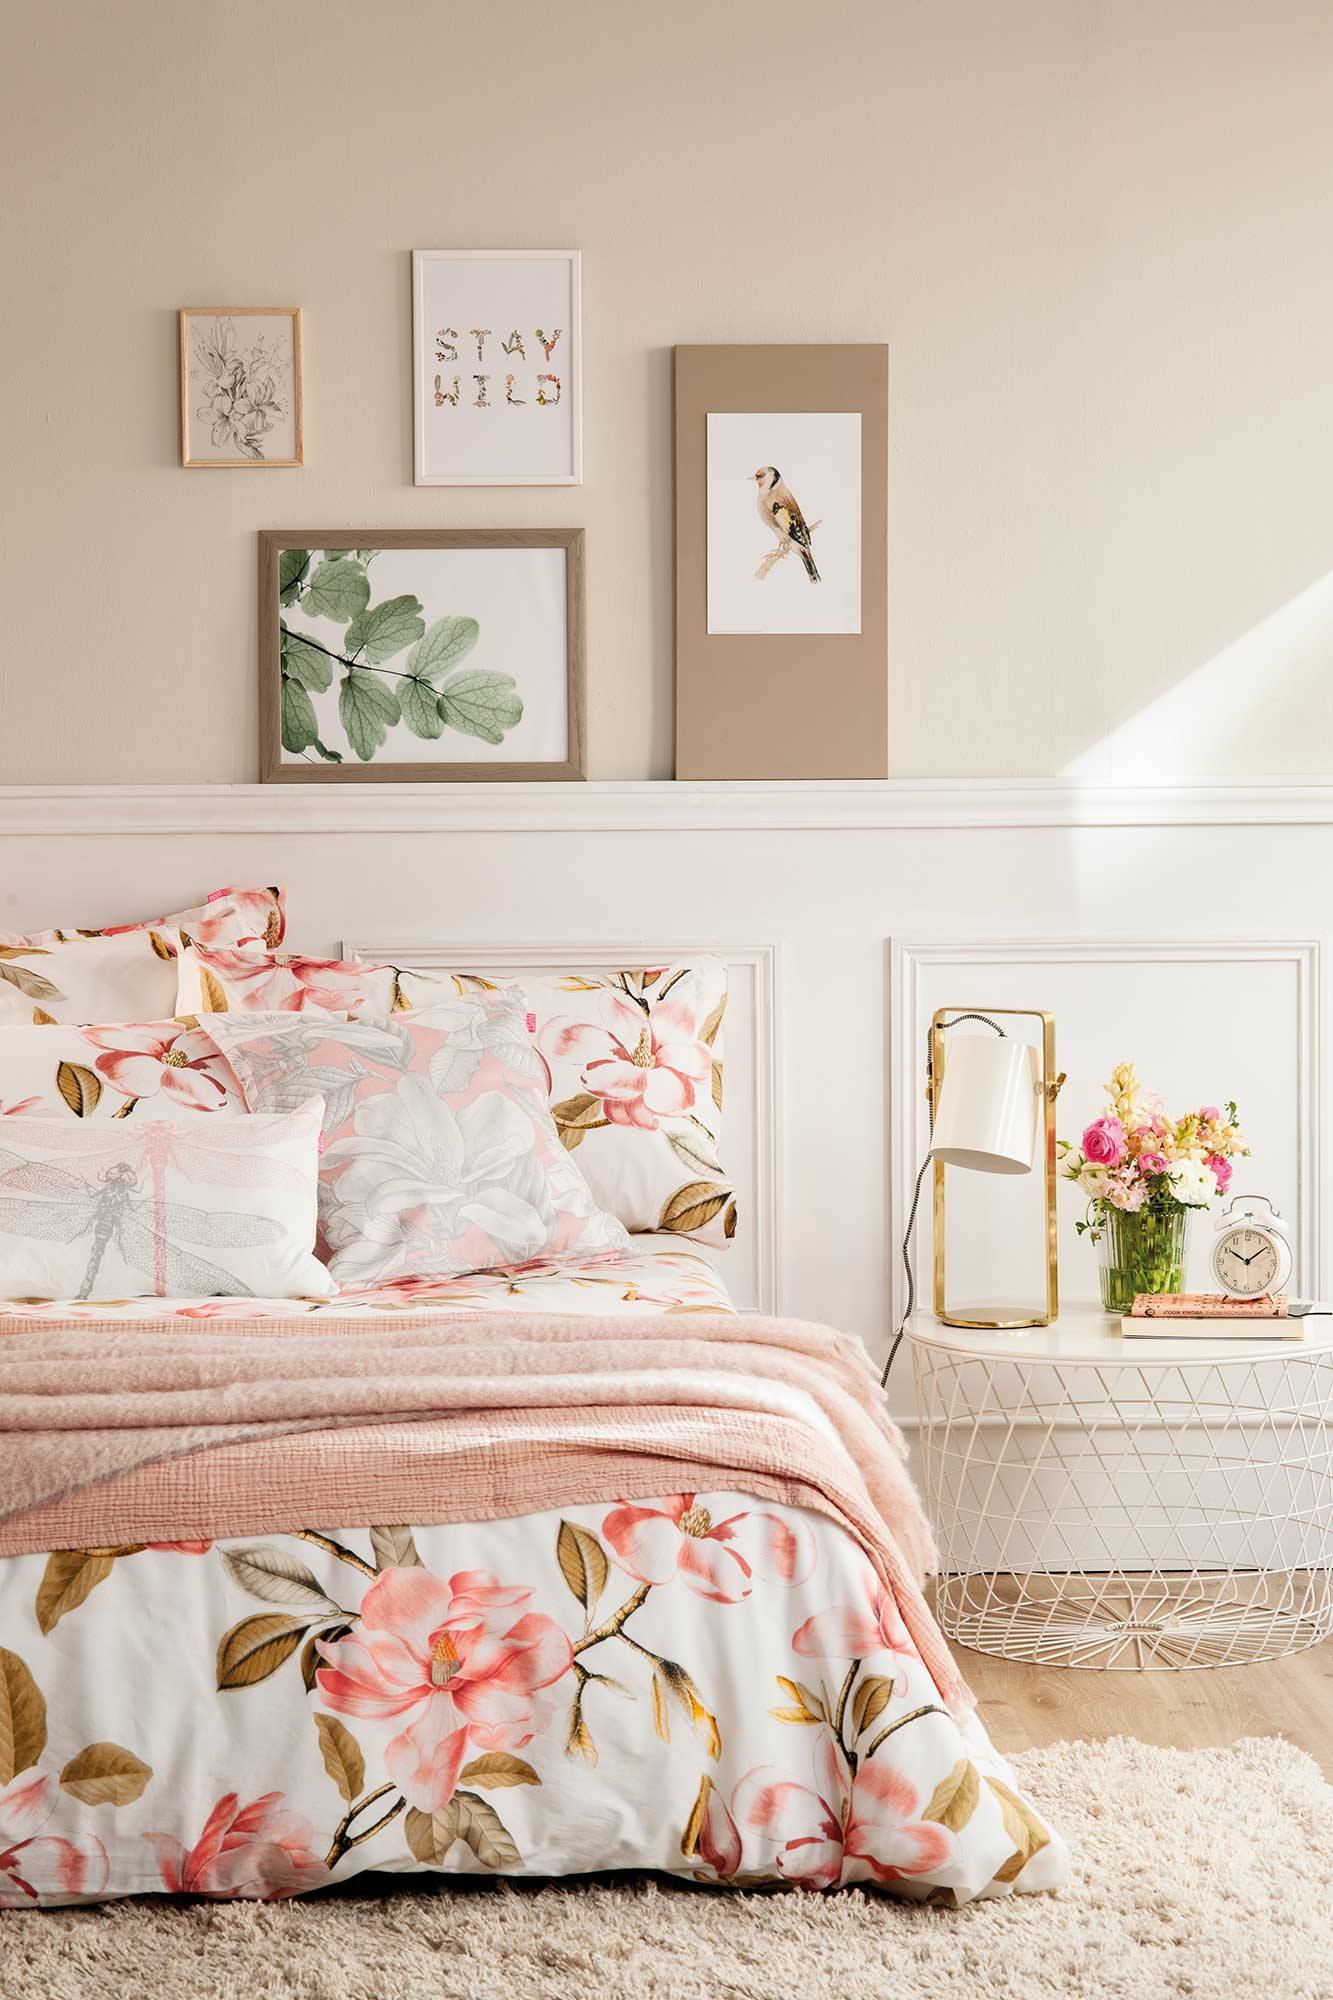 Dormitorio blanco y primaveral con ropa de cama de flores_00508333